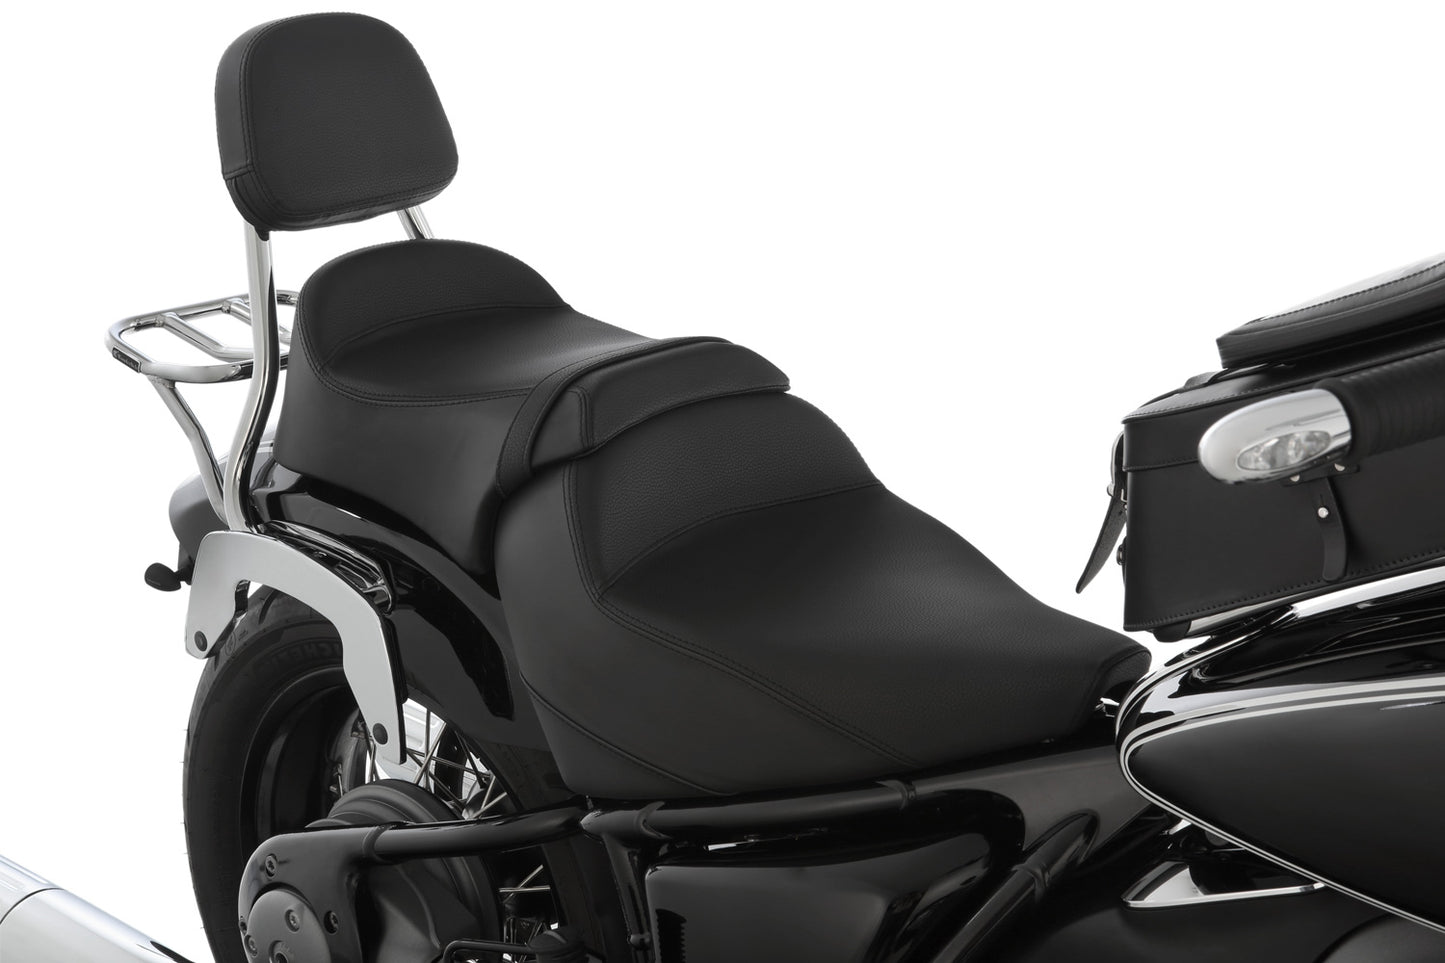 Wunderlich »AKTIVKOMFORT« rider seat - black